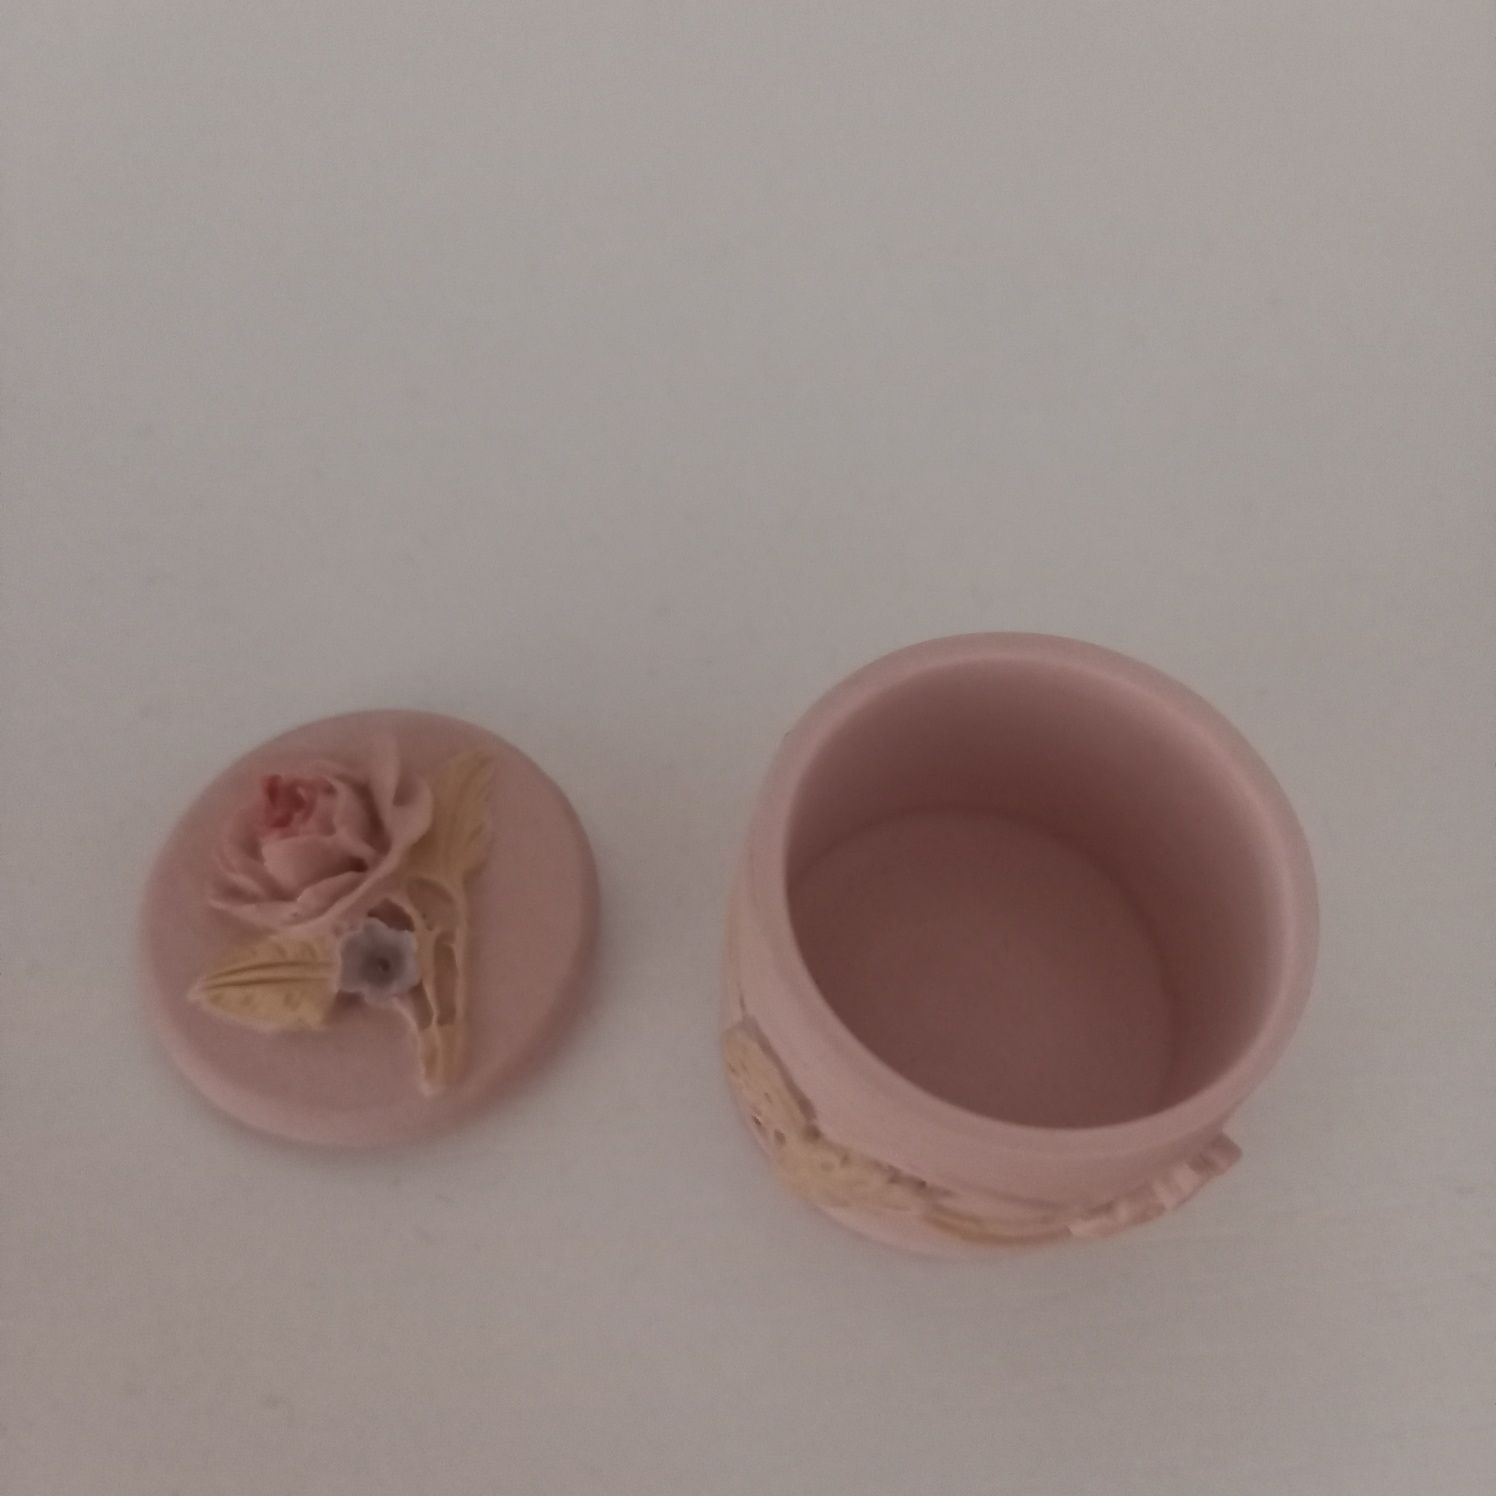 Urocze malutkie puzderko ceramiczne nowe szkatułka pudrowy róż różowe